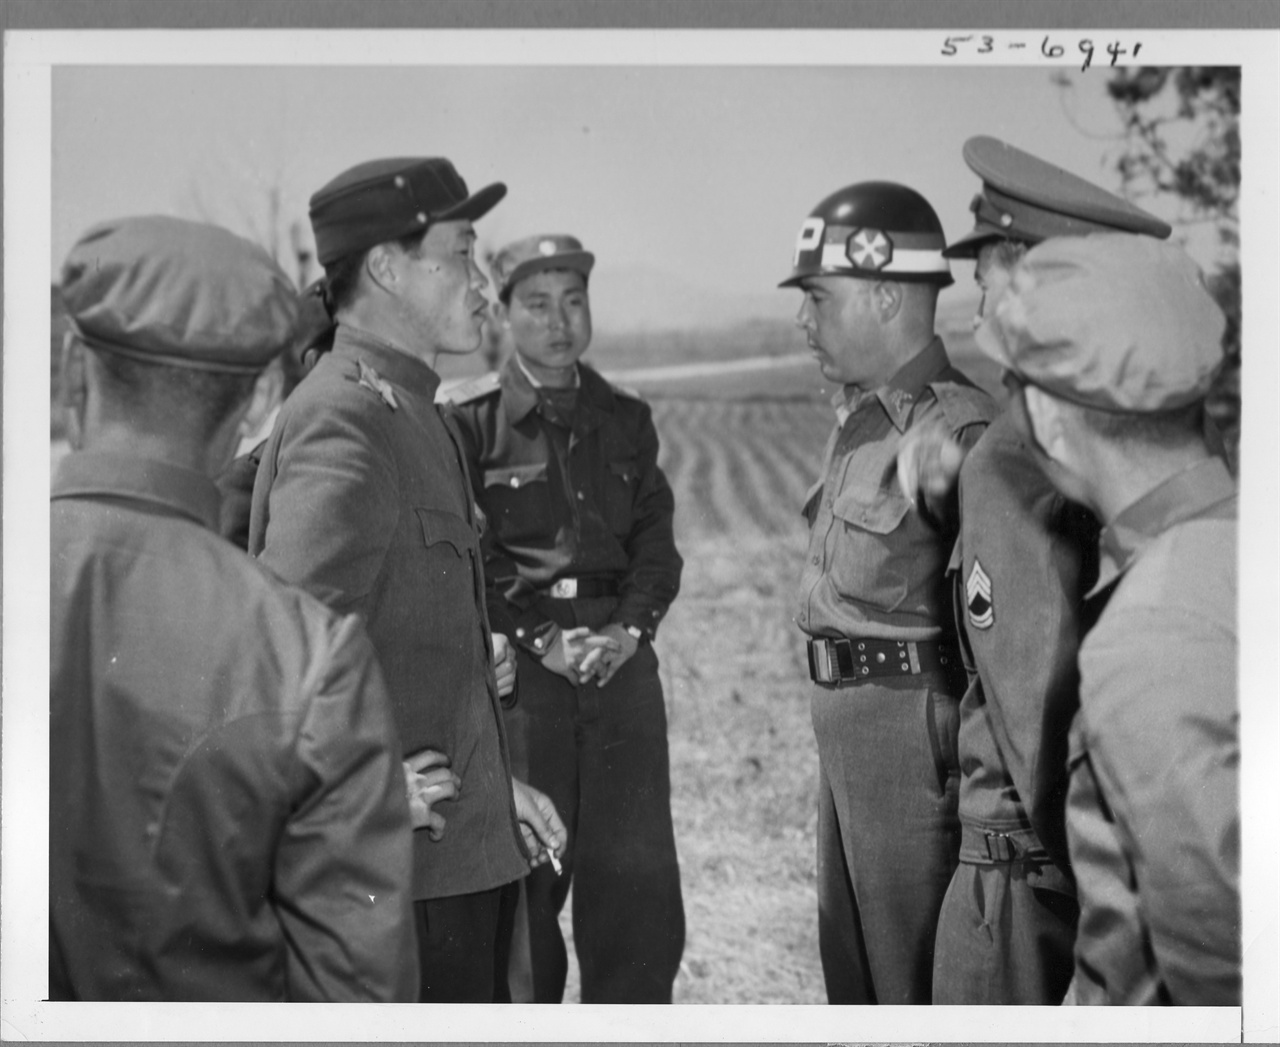  1953. 4. 9. 유엔군 측 경비장교와 북한 측 경비 장교 간의 설전으로 정전협정 이후에도 자주 볼 수 있었던 광경이다.